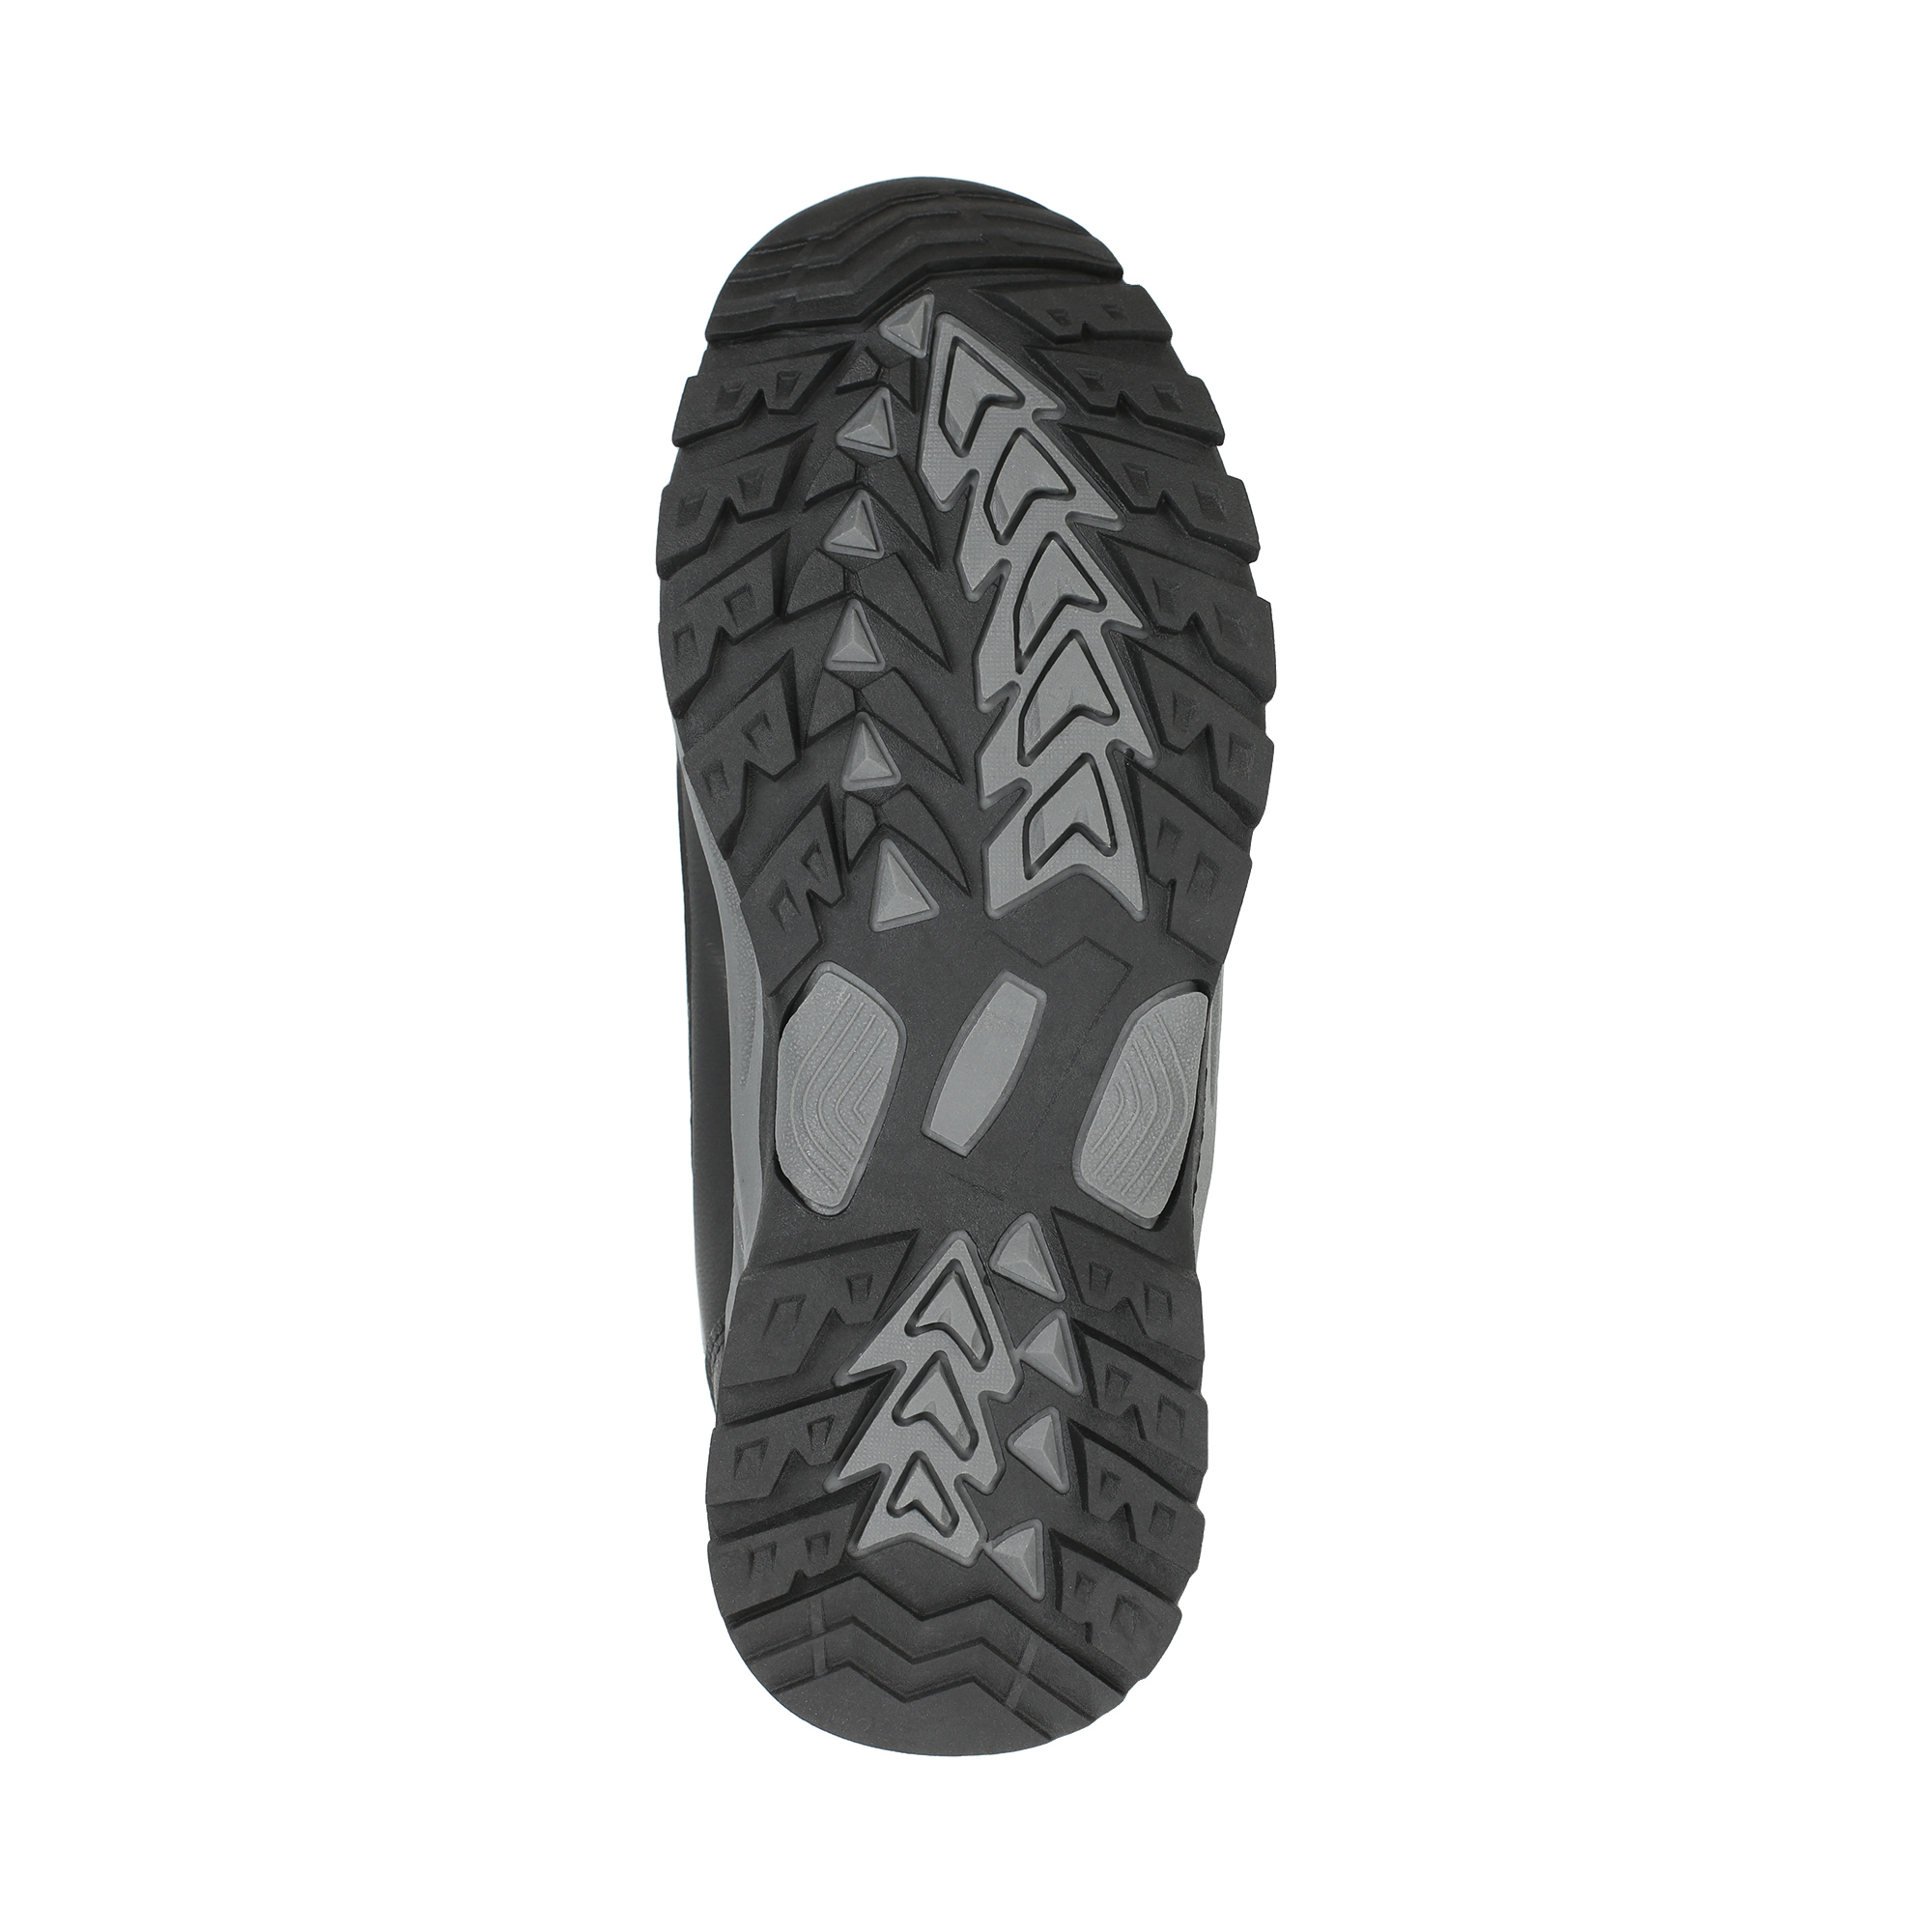 Ботинки quattrocomforto 179-02MV-027GW, цвет черный, размер 42 - фото 4